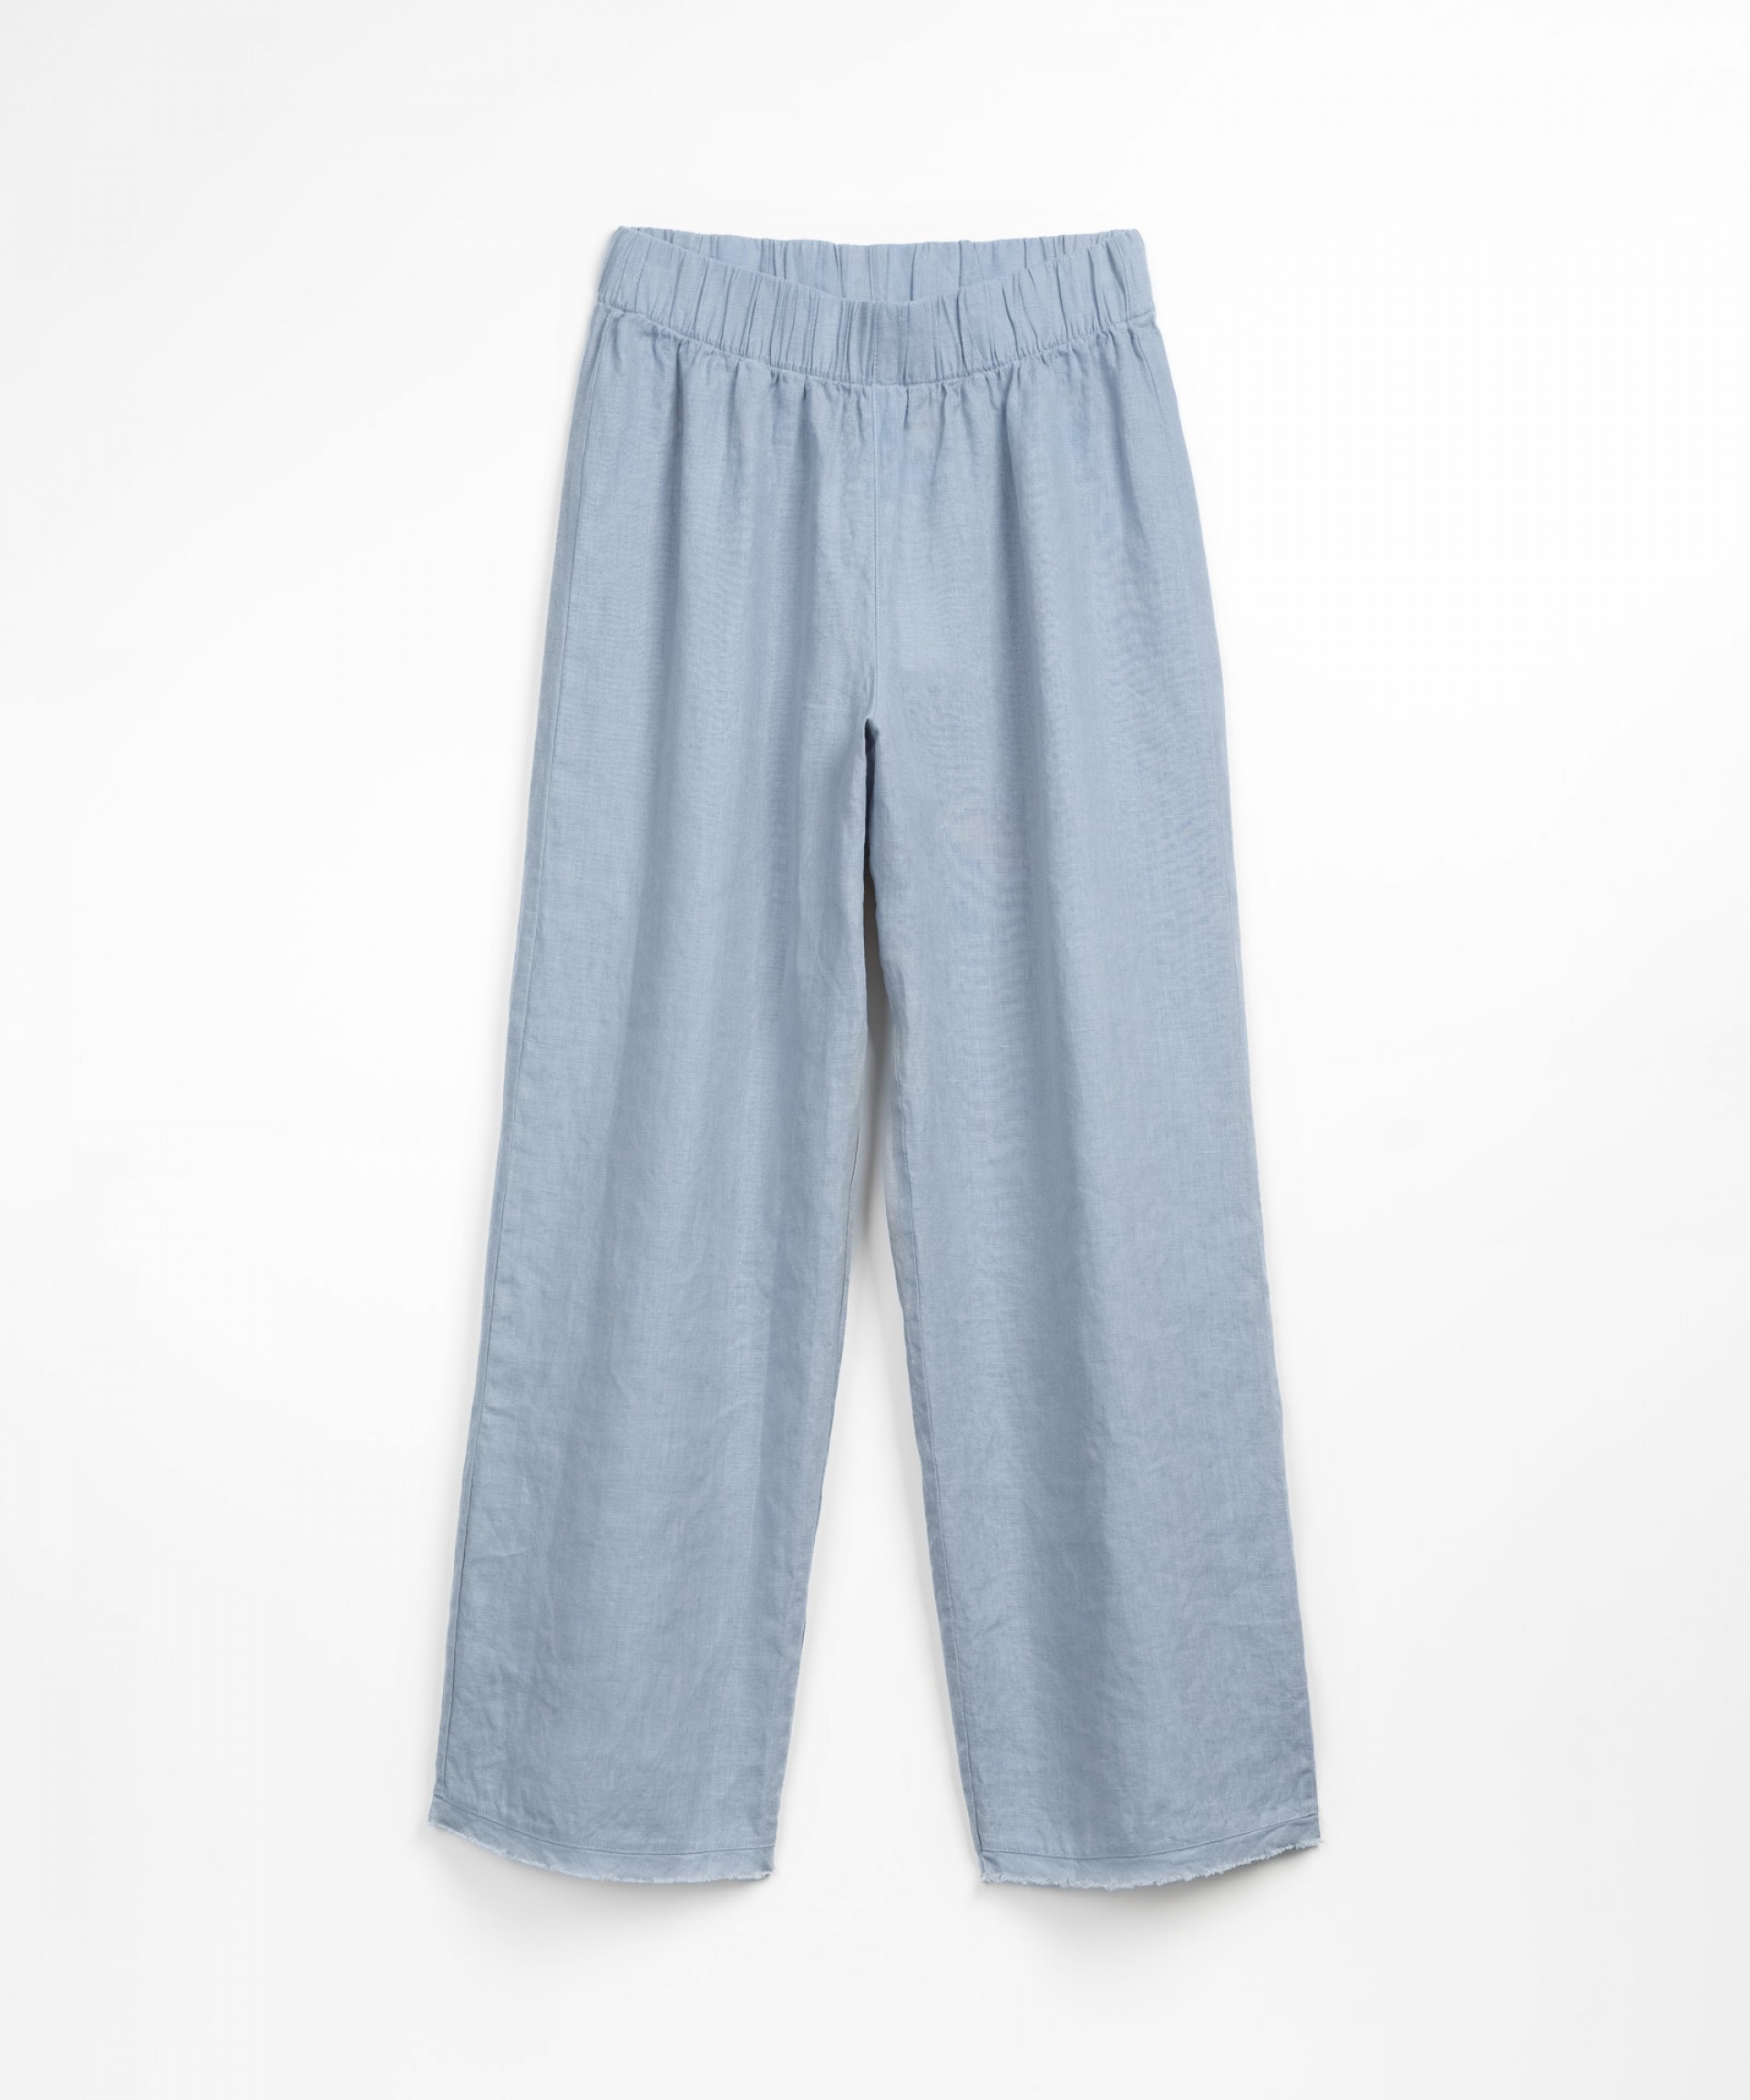 Linen trousers | Textile Art